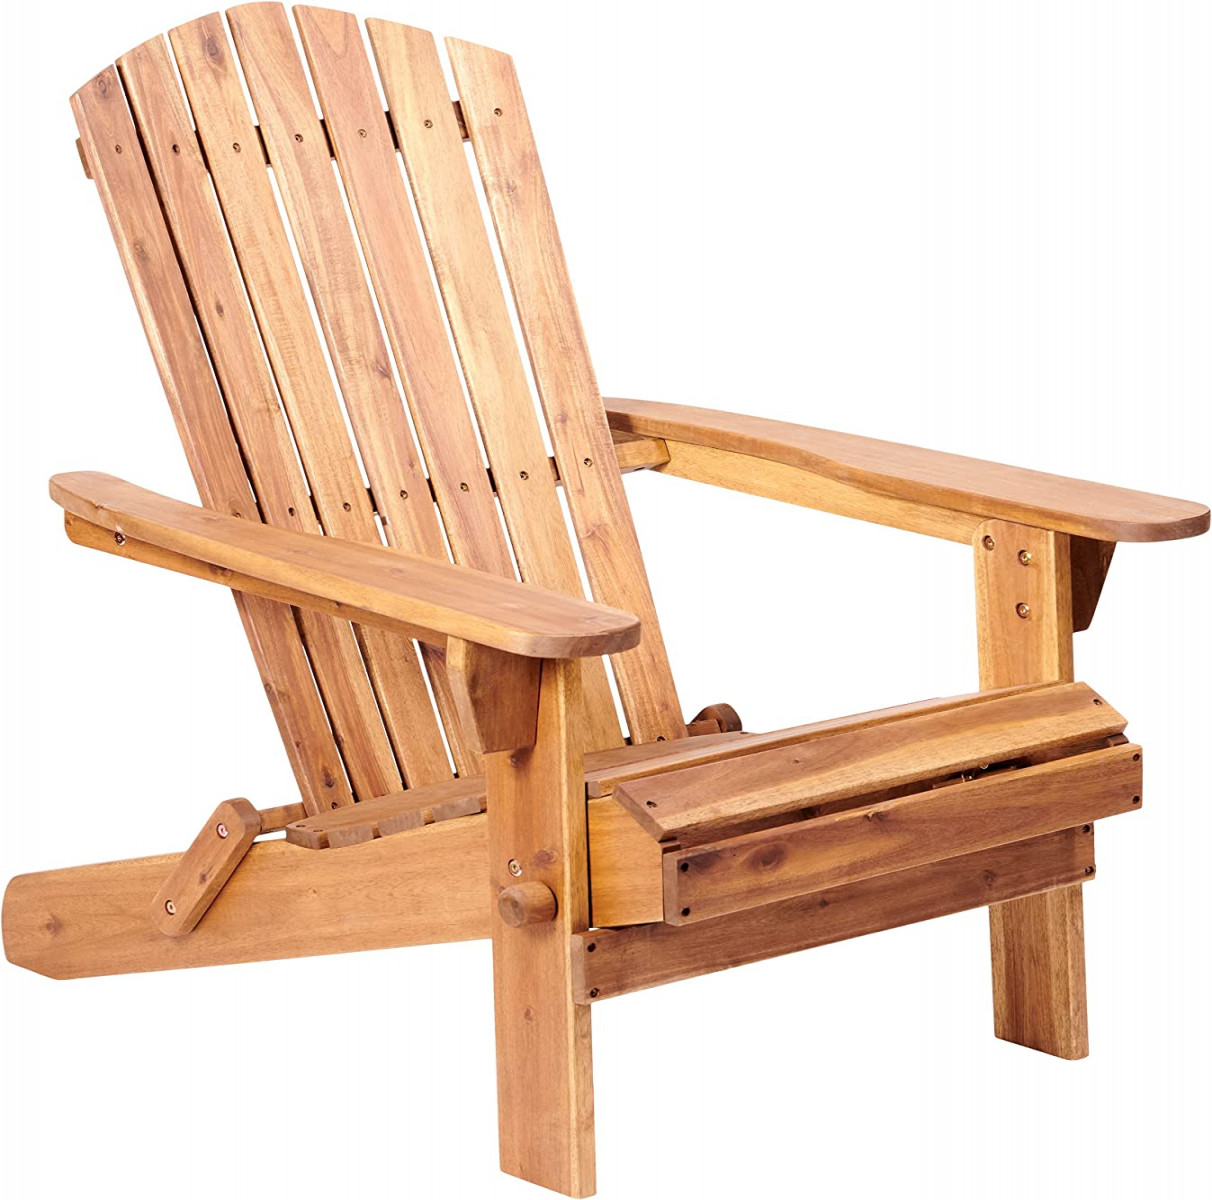 Plant Theatre Adirondack Chair – Outdoor, Akazienholz, Klappstühle für  Rasen, Feuerstelle und Terrasse, hervorragende Qualität